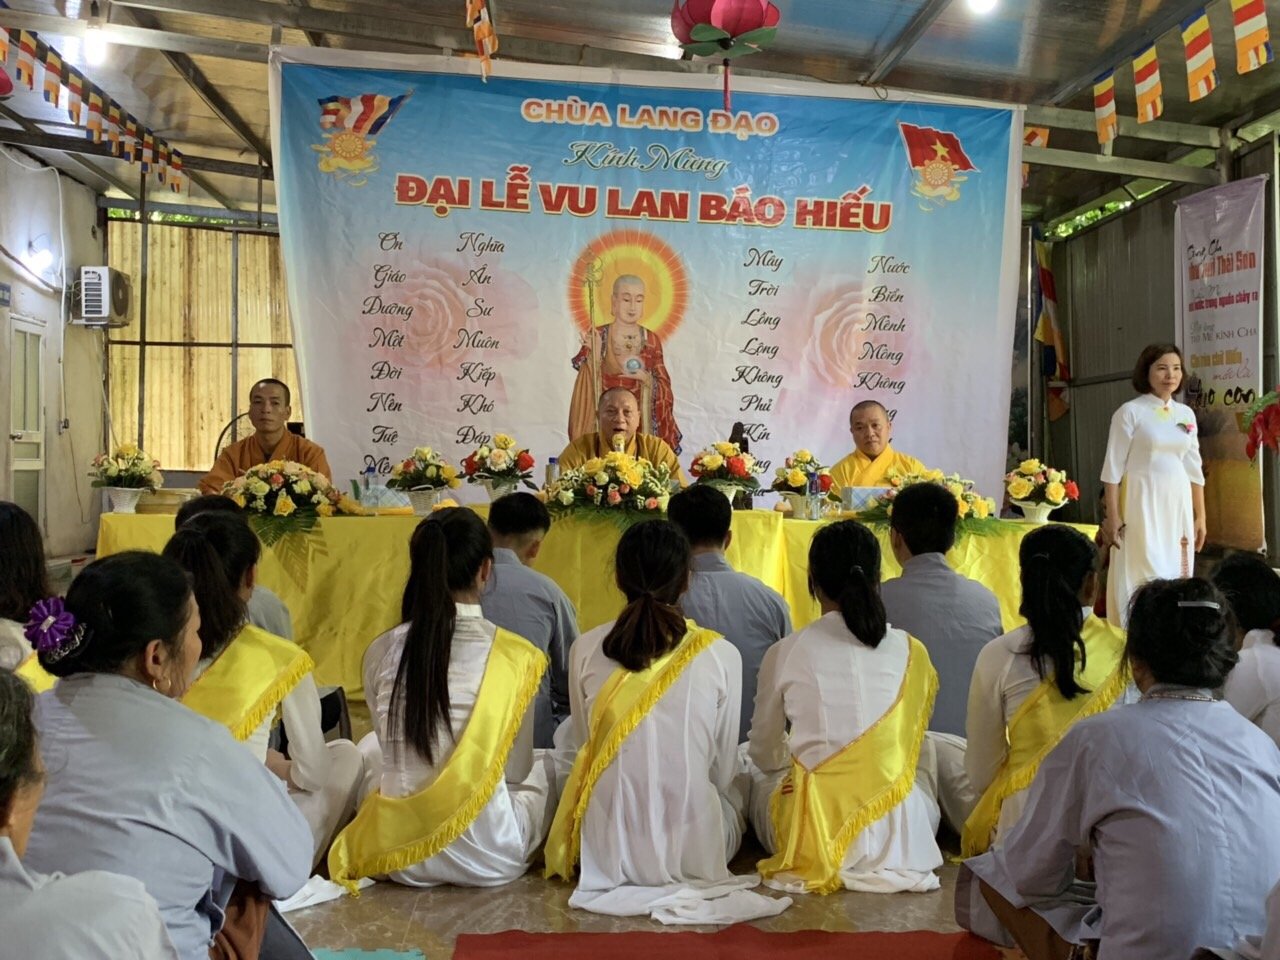 Đại lễ Vu Lan báo hiếu tại chùa Lang Đạo